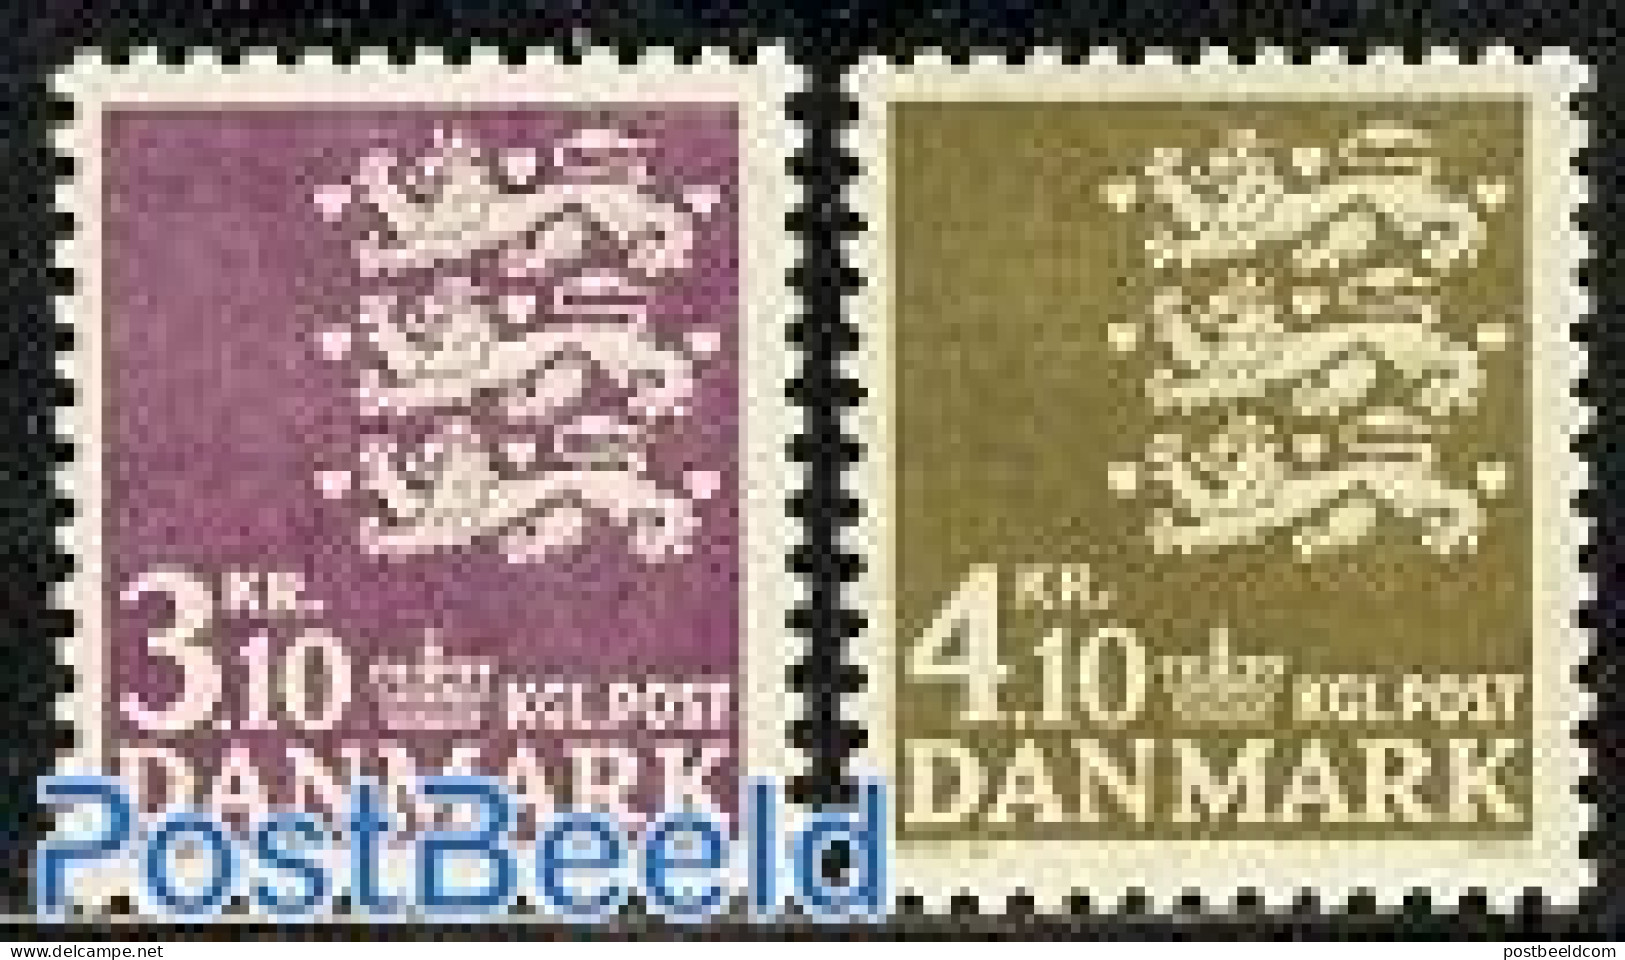 Denmark 1970 Definitives 2v, Mint NH - Ongebruikt